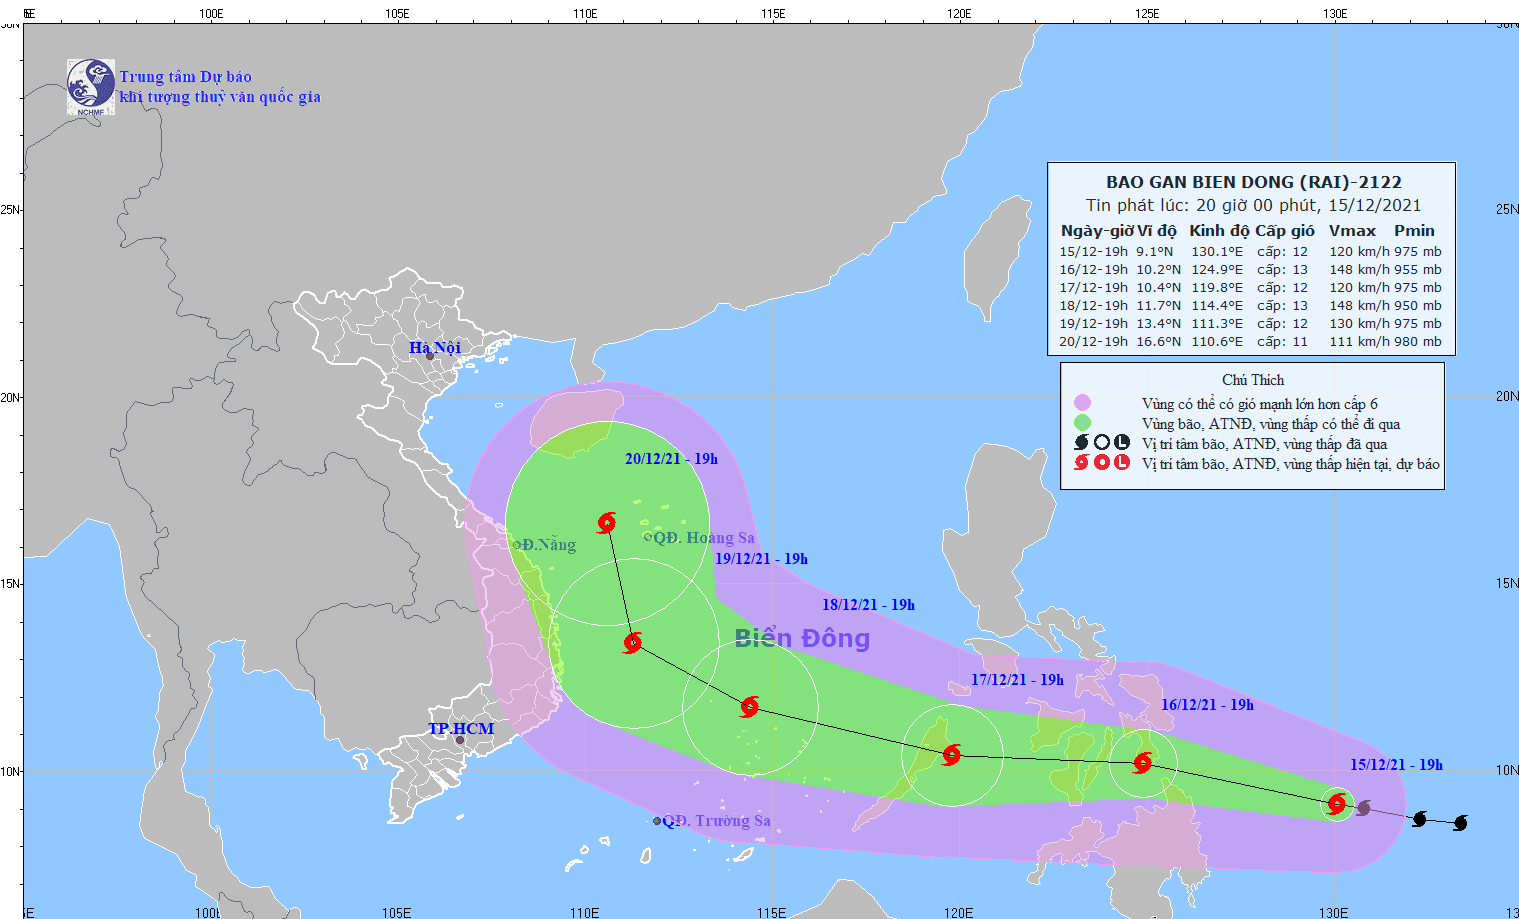 Biển Đông chuẩn bị đón bão Rai, Bắc Bộ sắp đón không khí lạnh